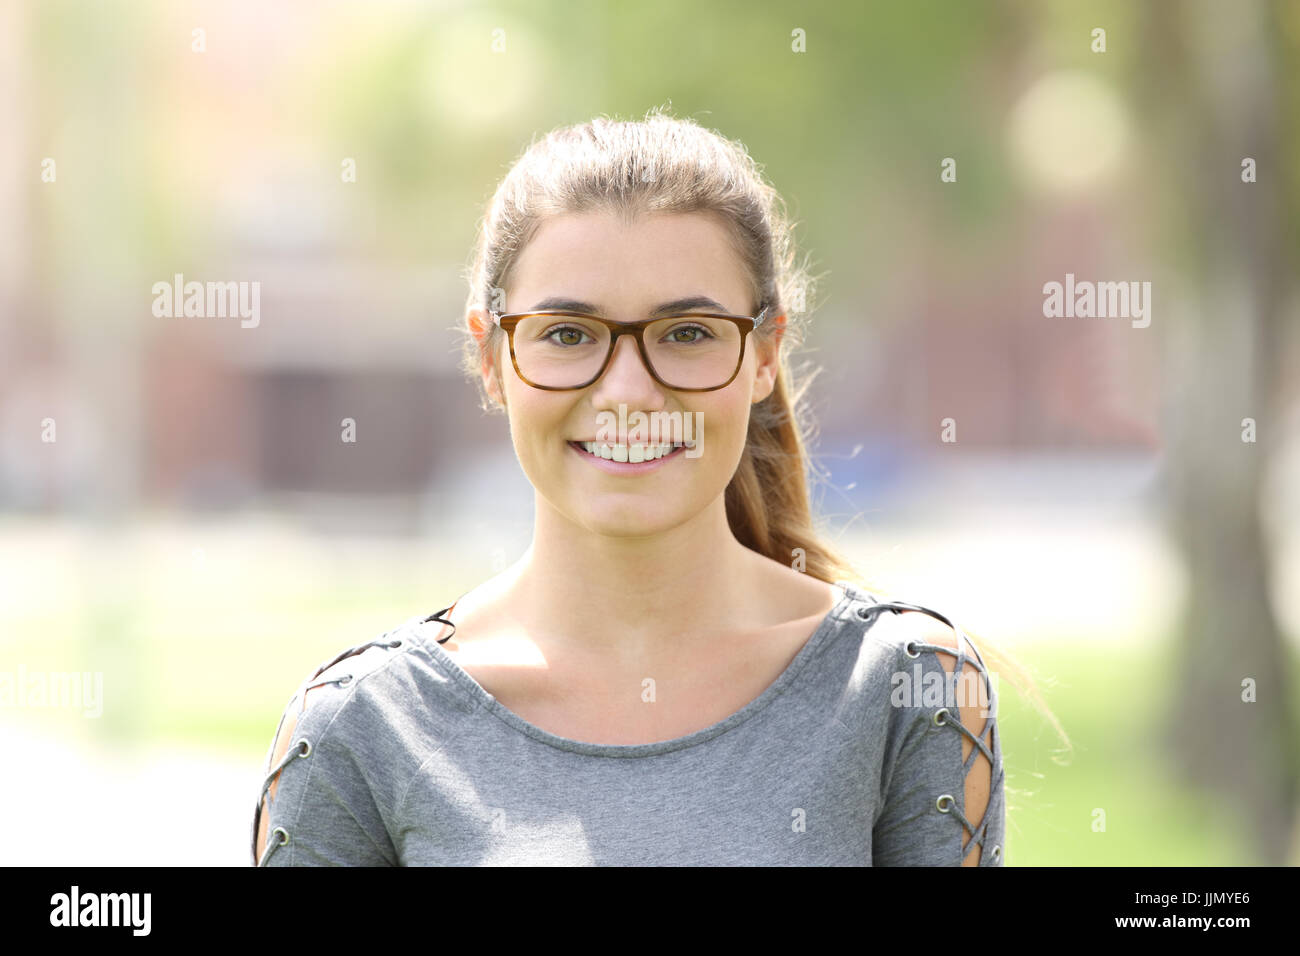 Ritratto di una ragazza che indossa occhiali che vi guardano all'aperto in un parco Foto Stock